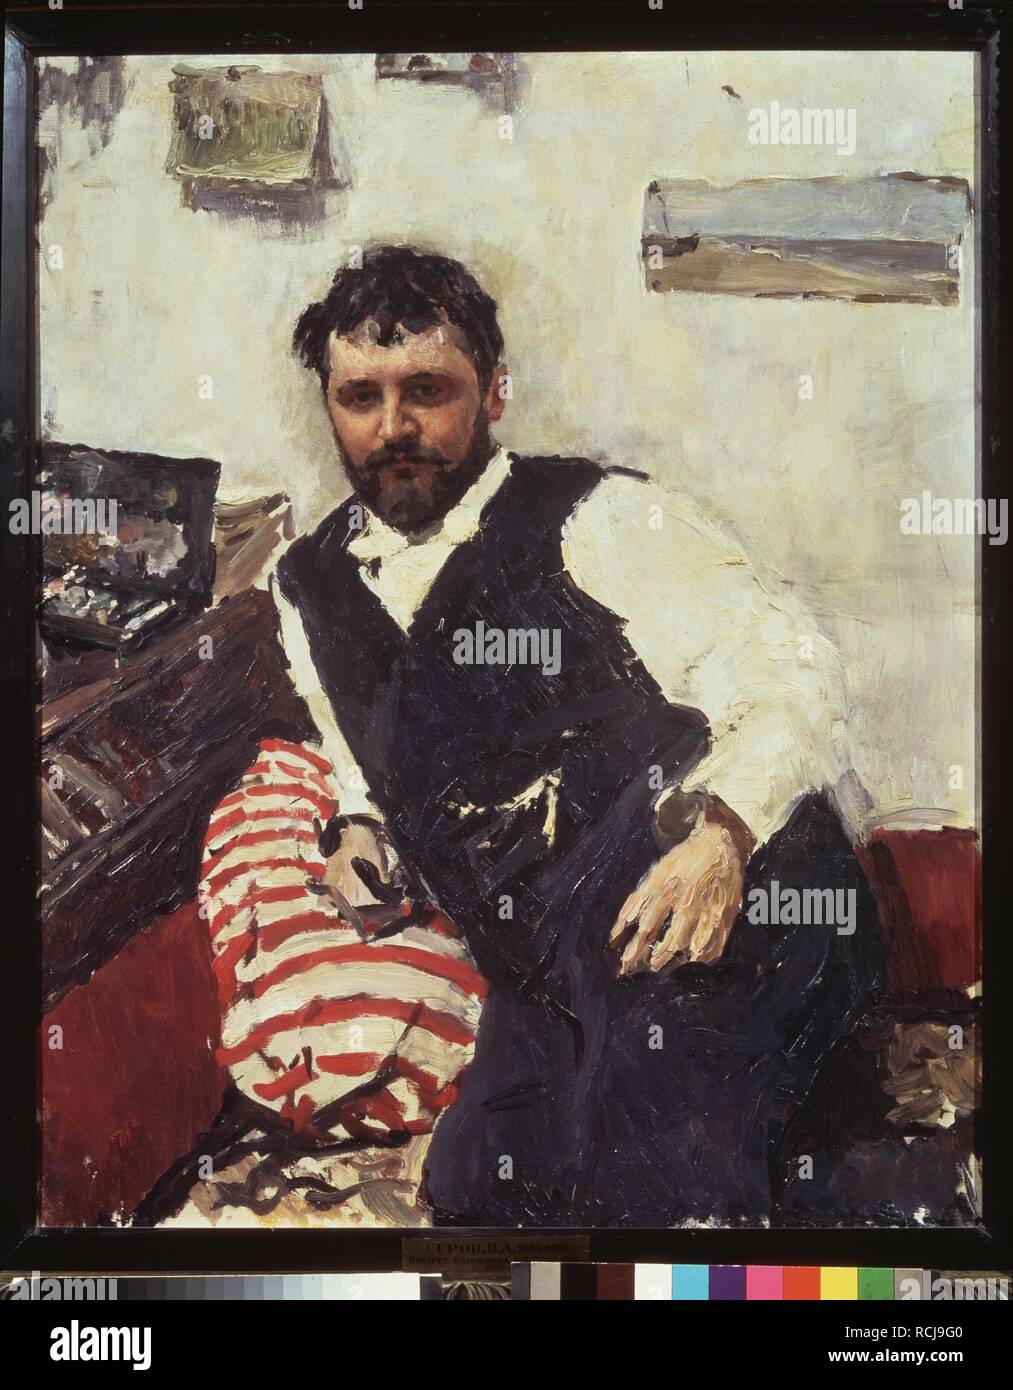 Ritratto dell'artista Konstantin Korovin (1861-1939). Museo: Membro Galleria Tretyakov di Mosca. Autore: Serov, Valentin Alexandrovich. Foto Stock